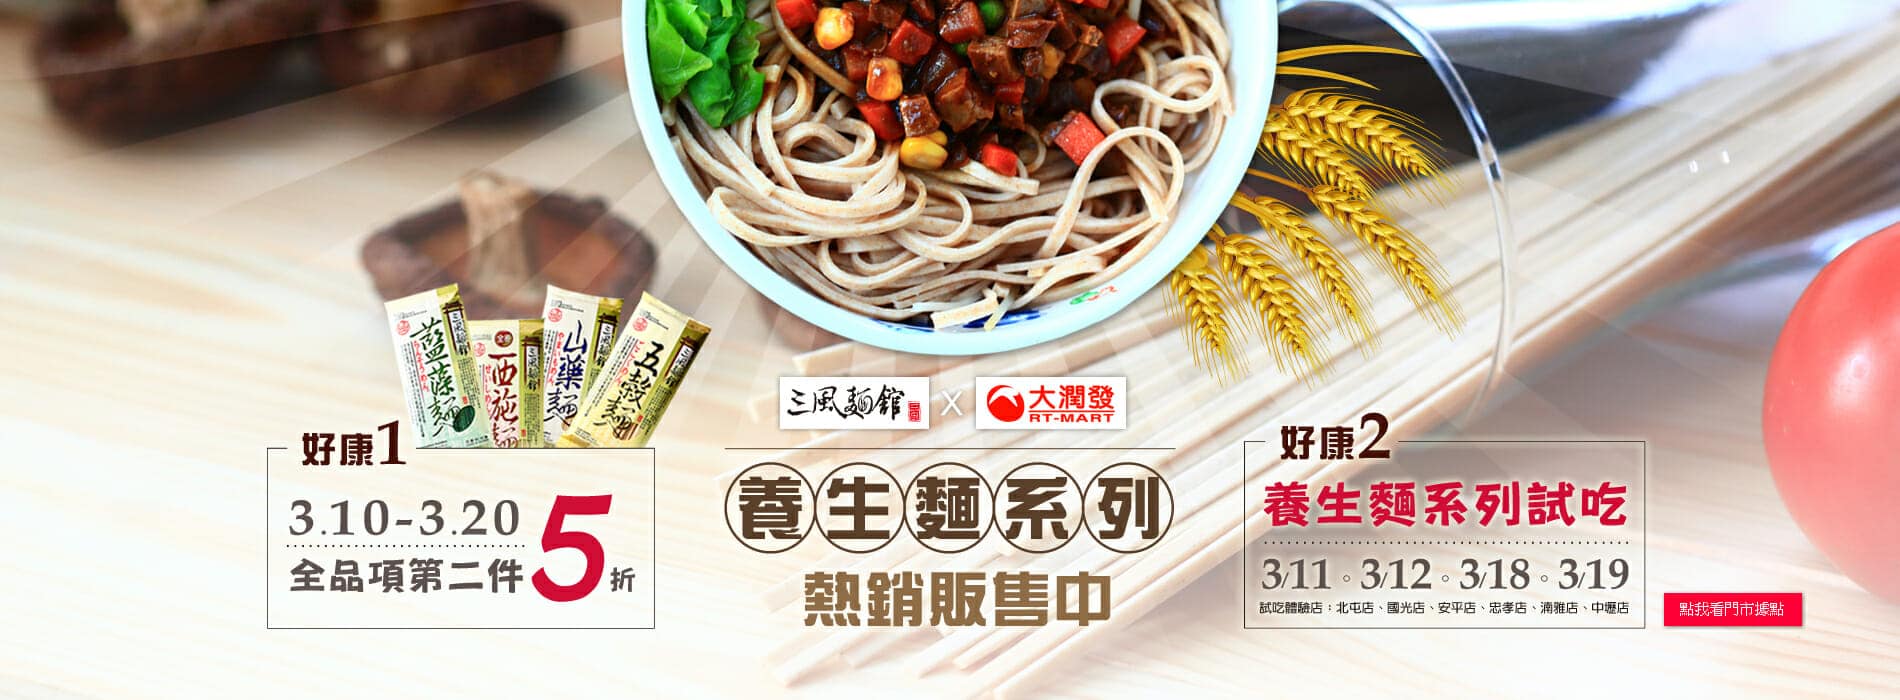 【試吃體驗】三風麵館x大潤發 養生麵系列試吃體驗